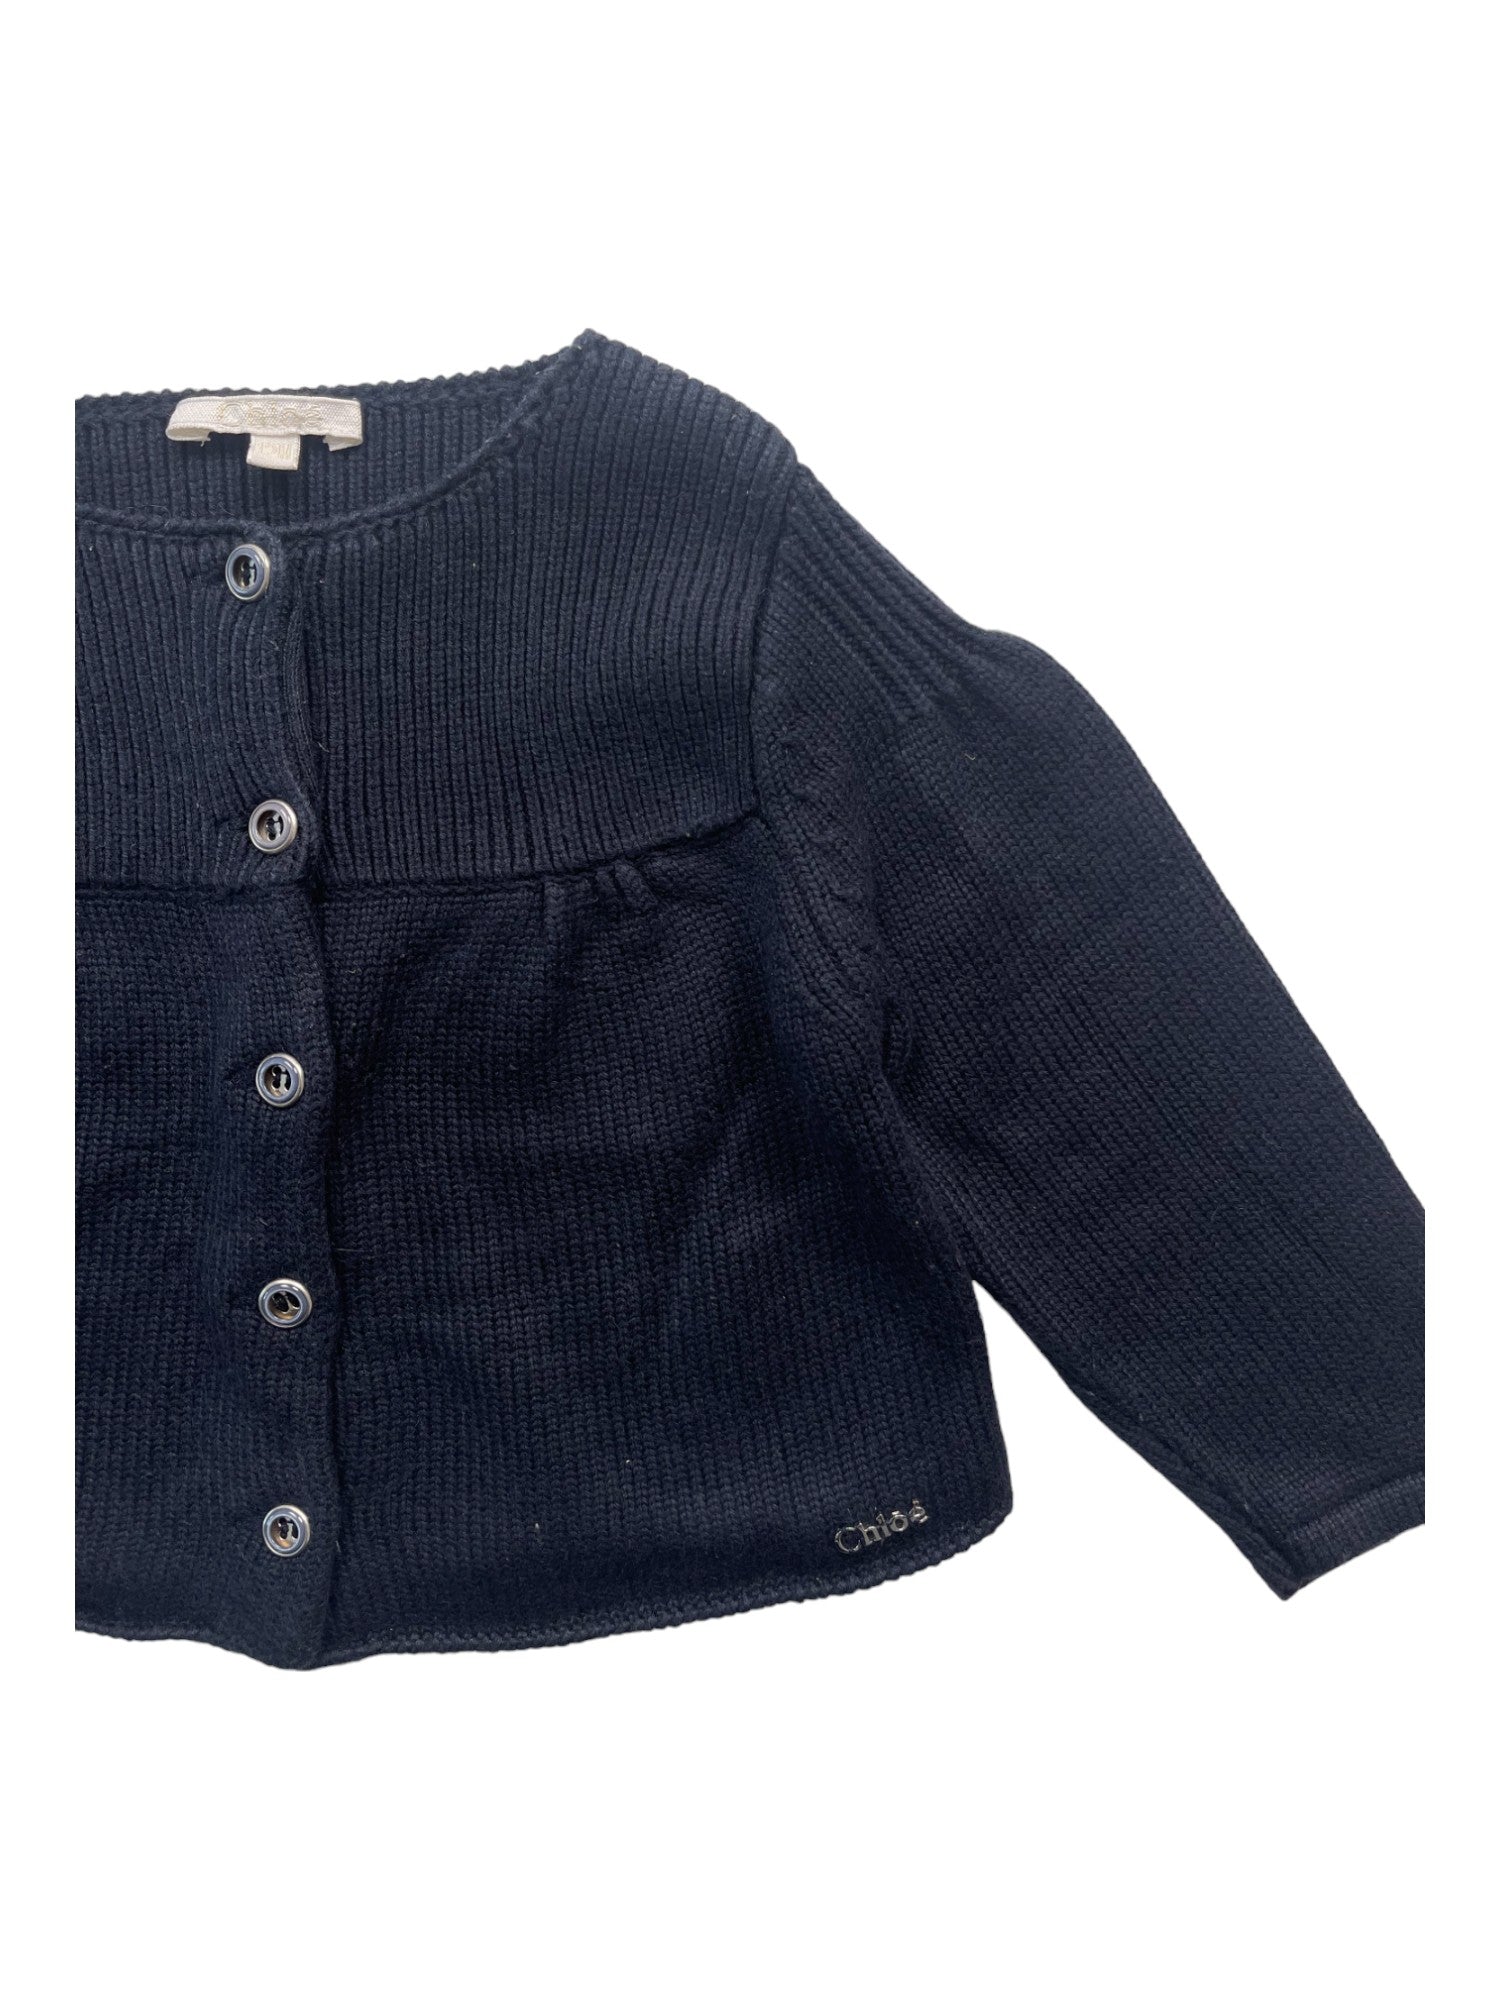 CHLOÉ - Cardigan en coton bleu marine - 12 mois